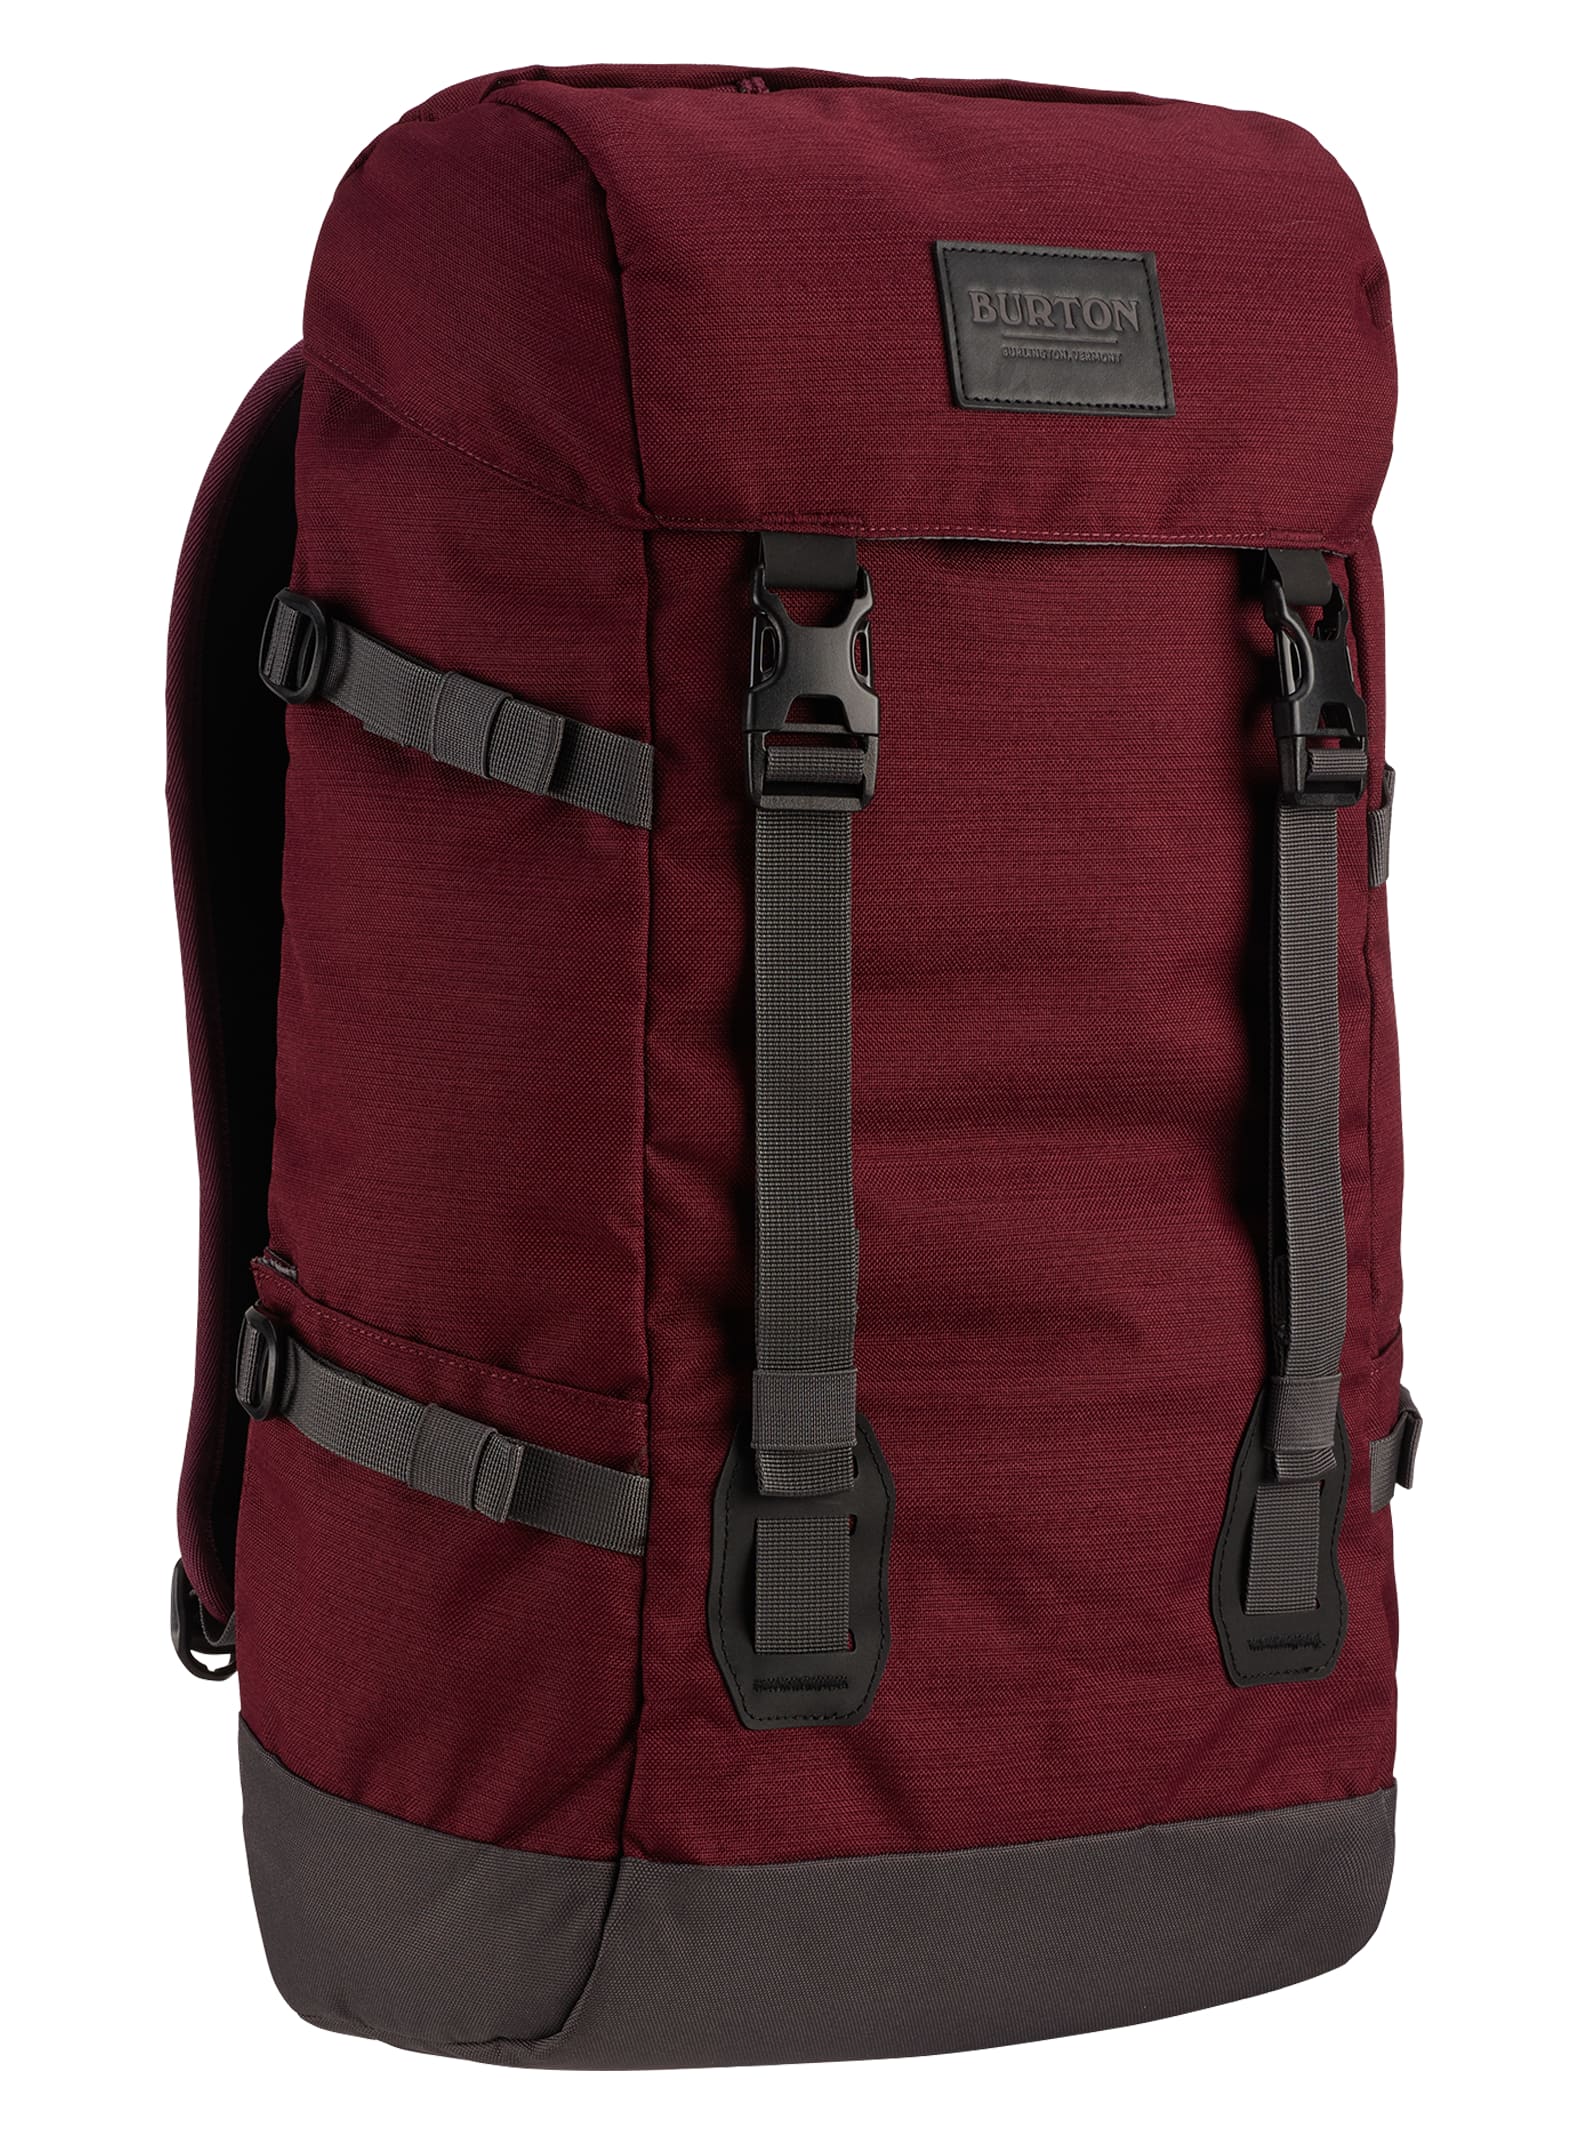 Burton Tinder 2.0 30L Backpack | Burton.com Spring 2021 DK